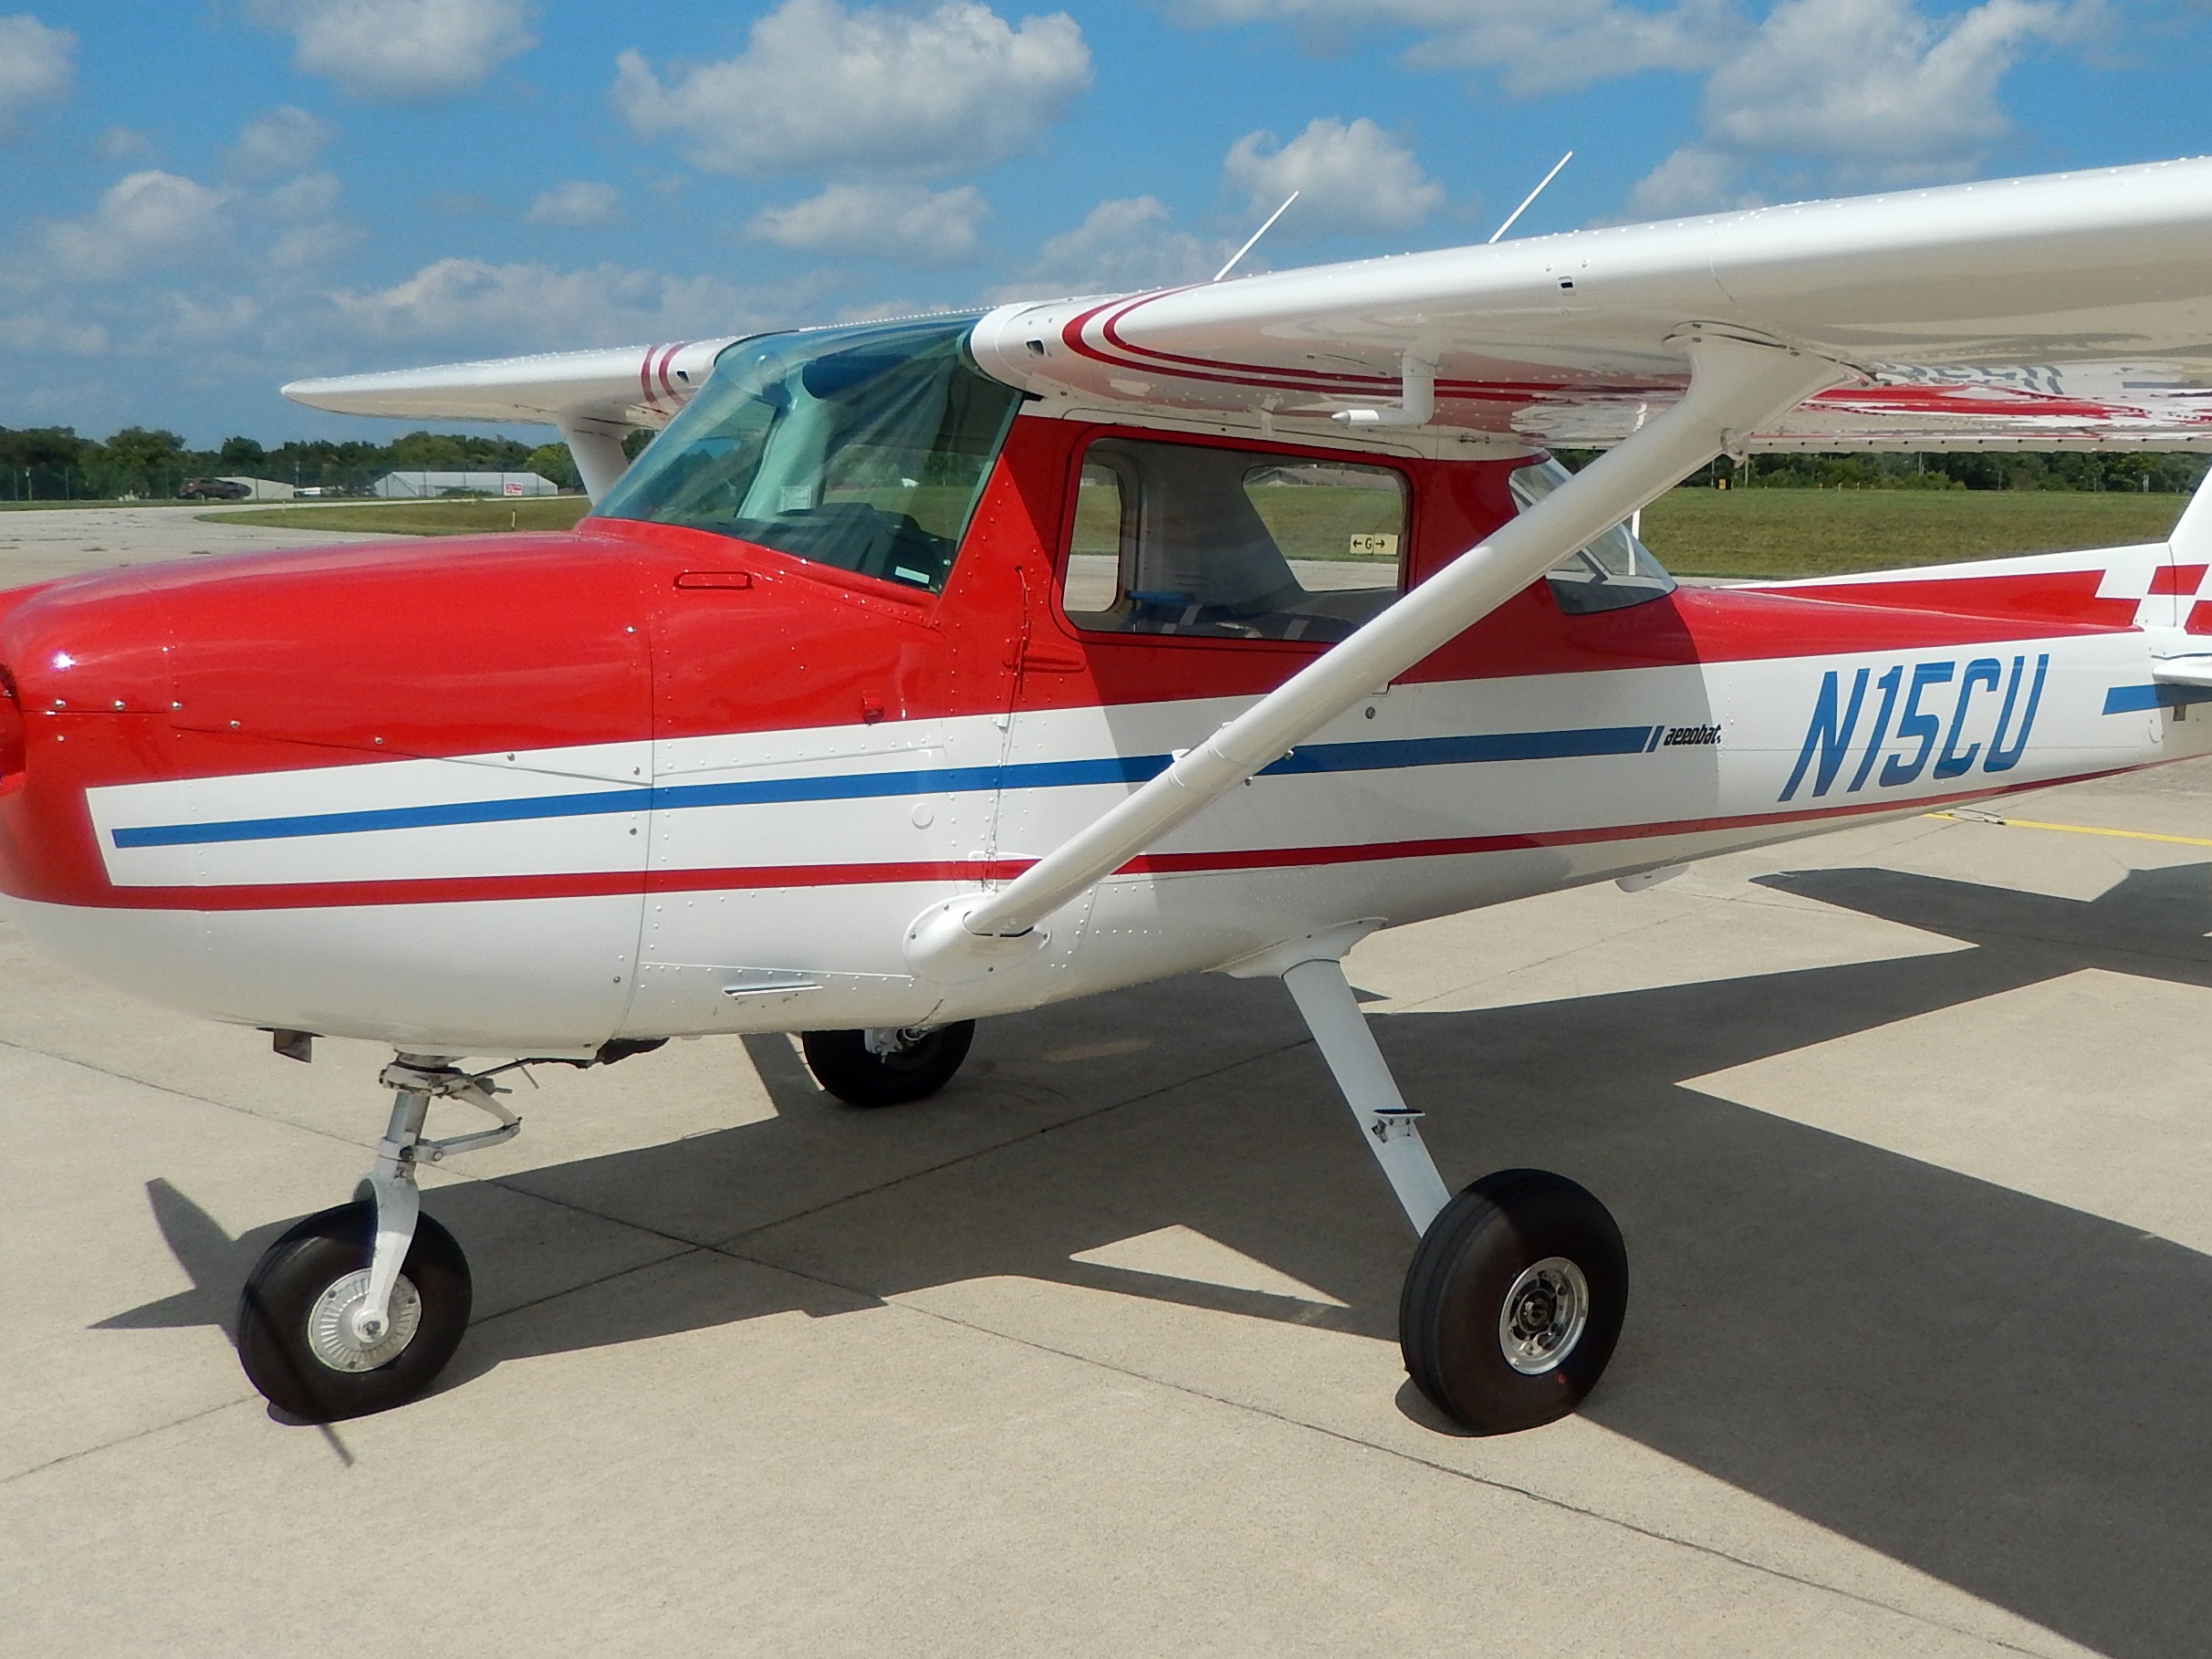 1977 Cessna A 150M - N15CU